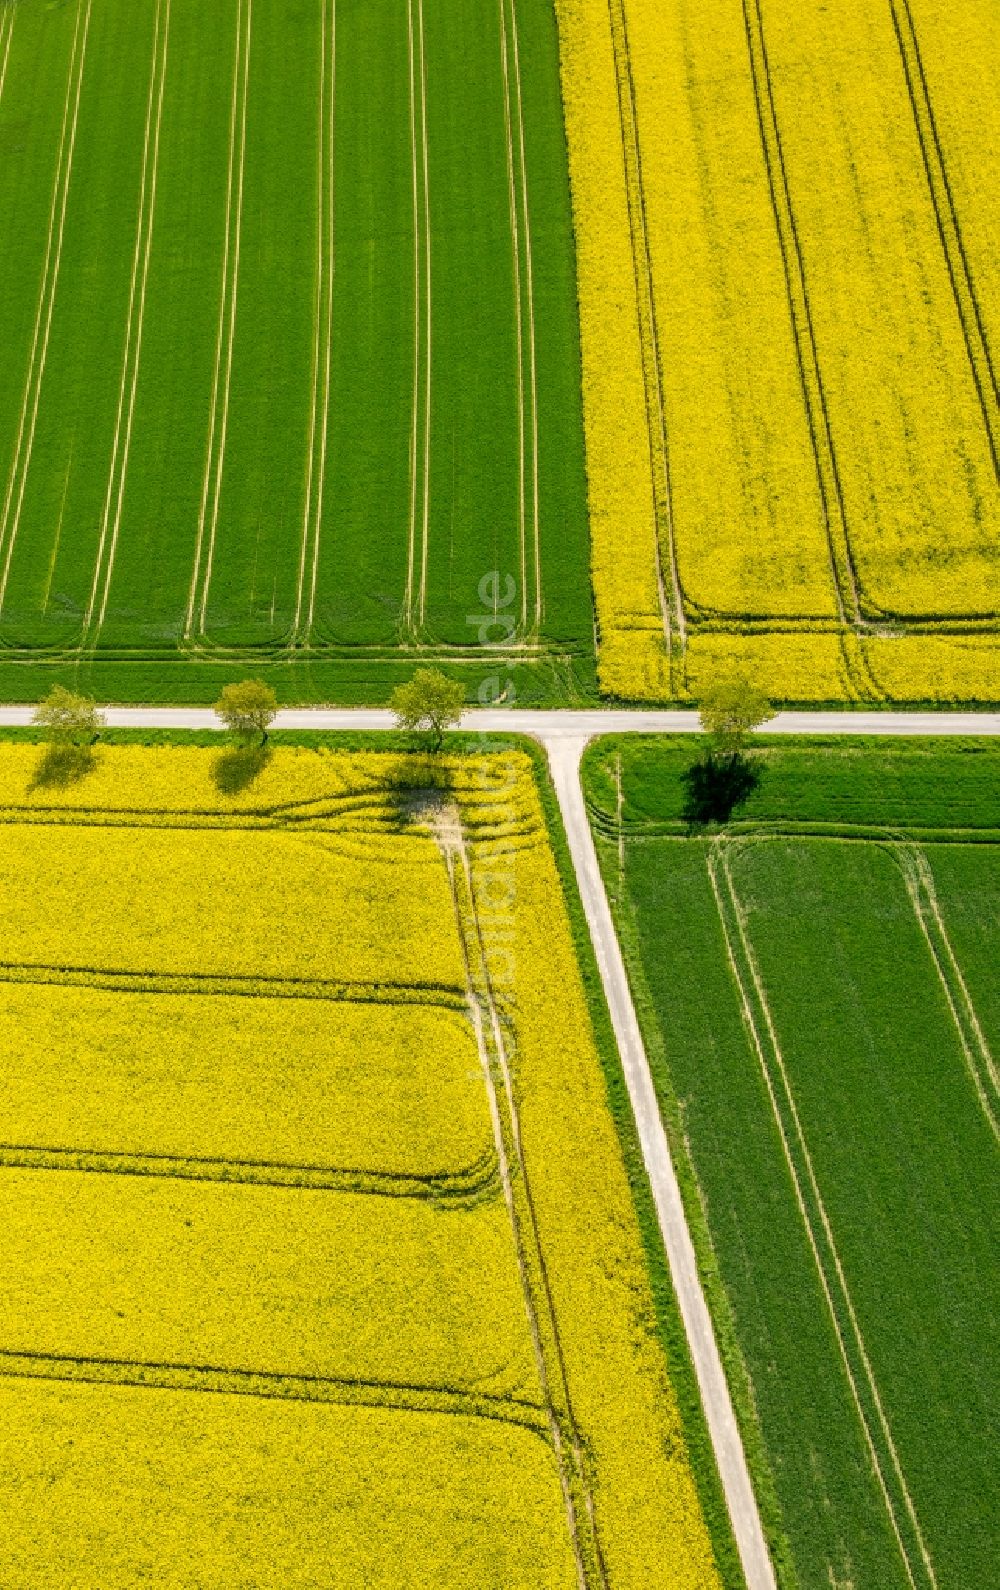 Luftaufnahme Belecke - Feld- Landschaft gelb blühender Raps- Blüten in Belecke im Bundesland Nordrhein-Westfalen, Deutschland